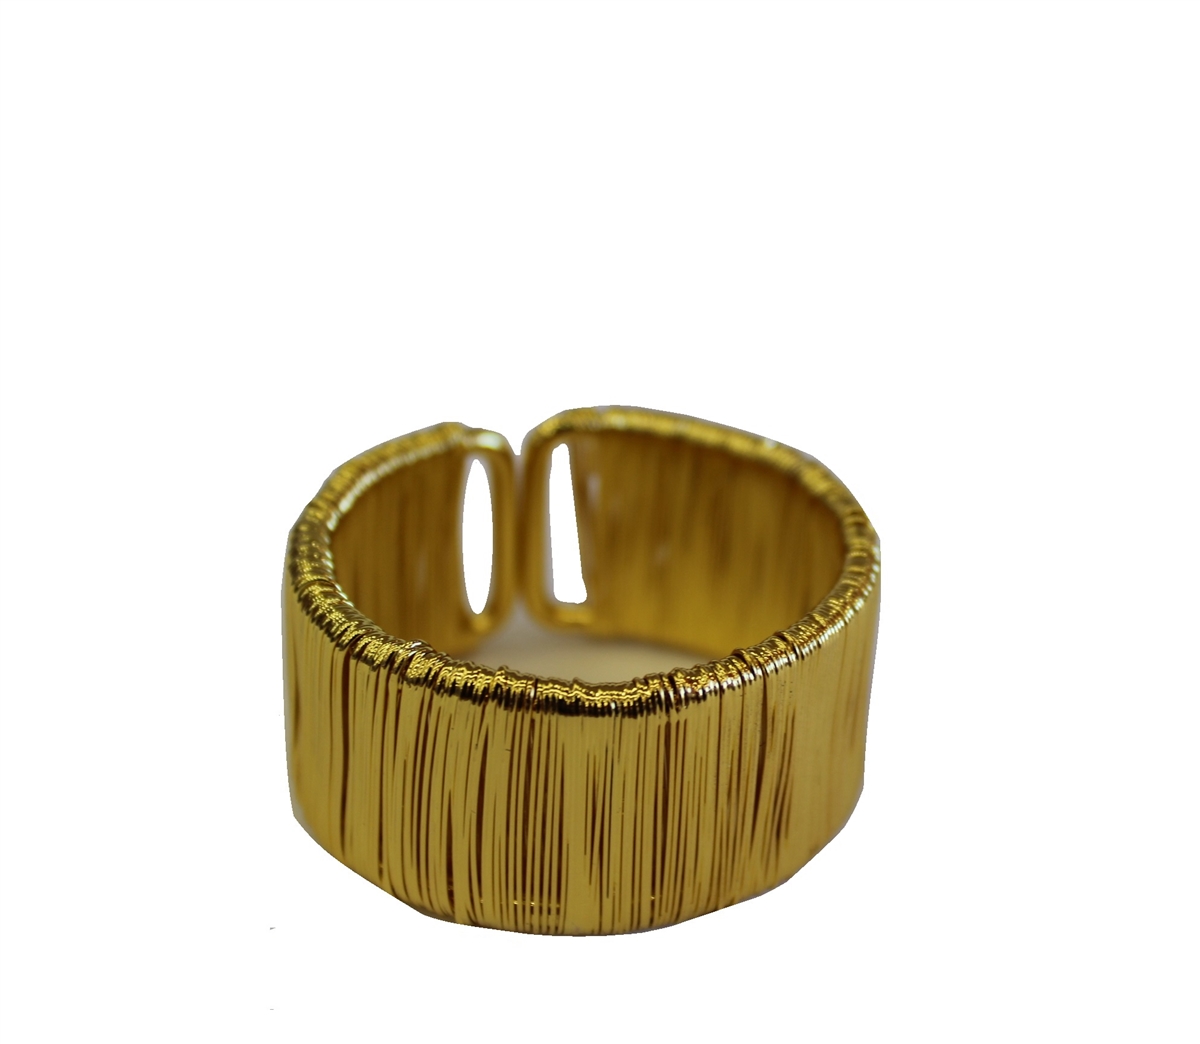 Gold Strands Design Like Napkin Rings Set of 4